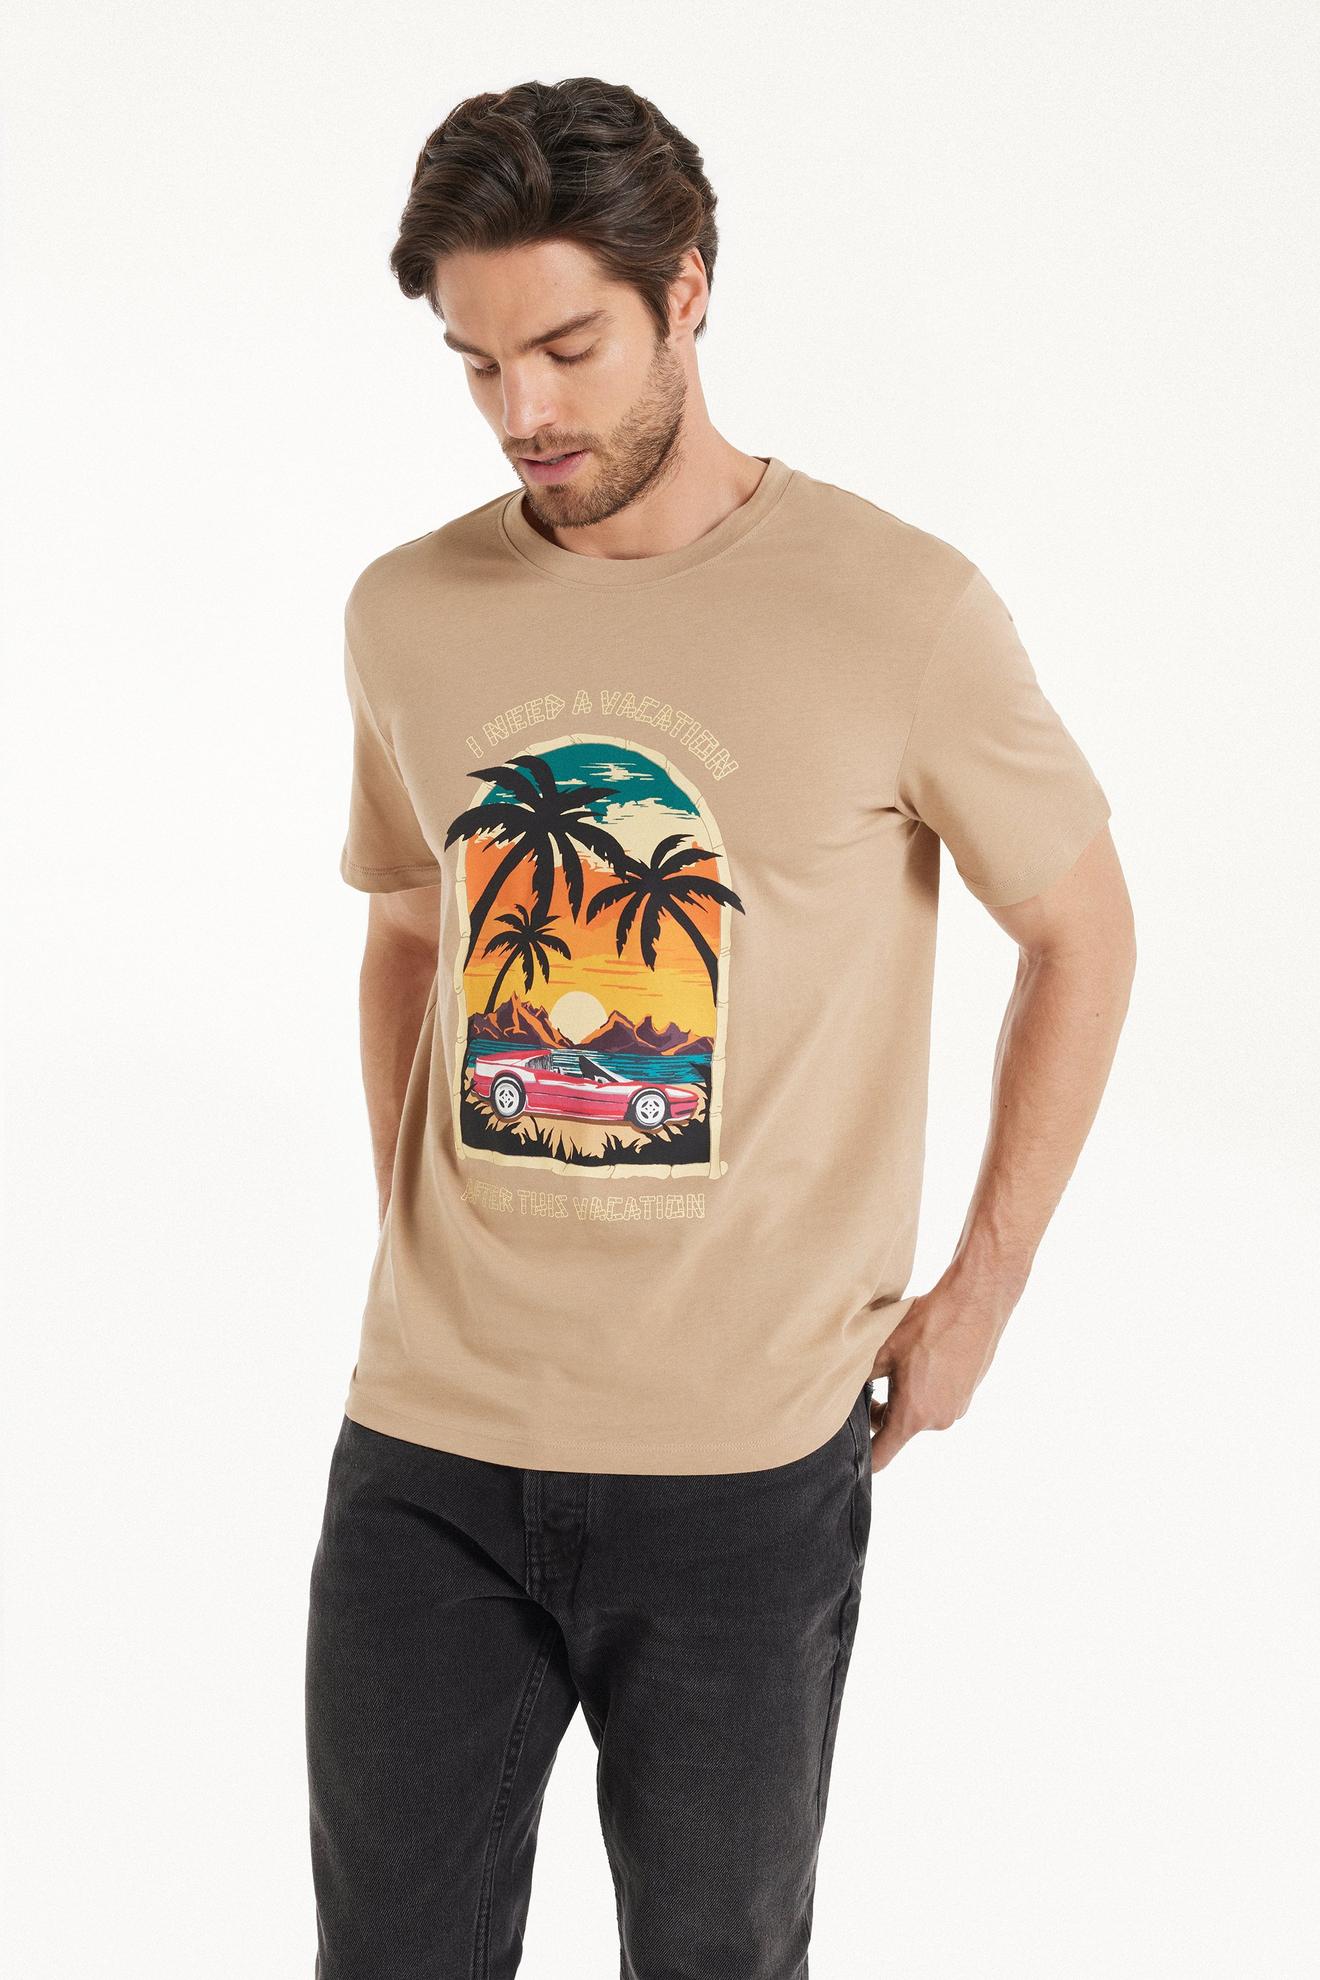 Προσφορά T-shirt Βαμβακερό με Print για 10,99€ σε Tezenis